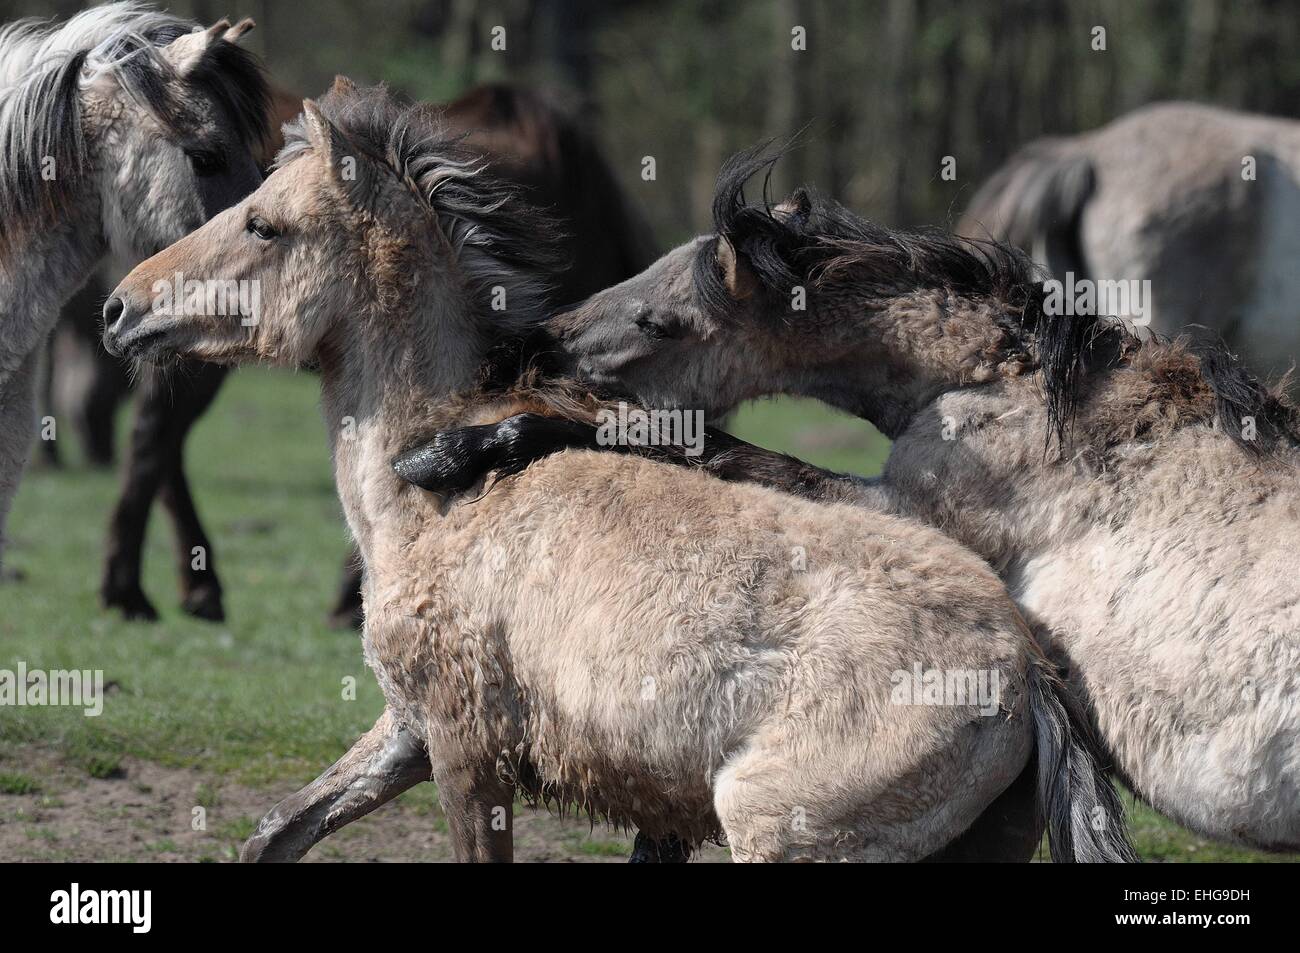 Fighting horses Stock Photo